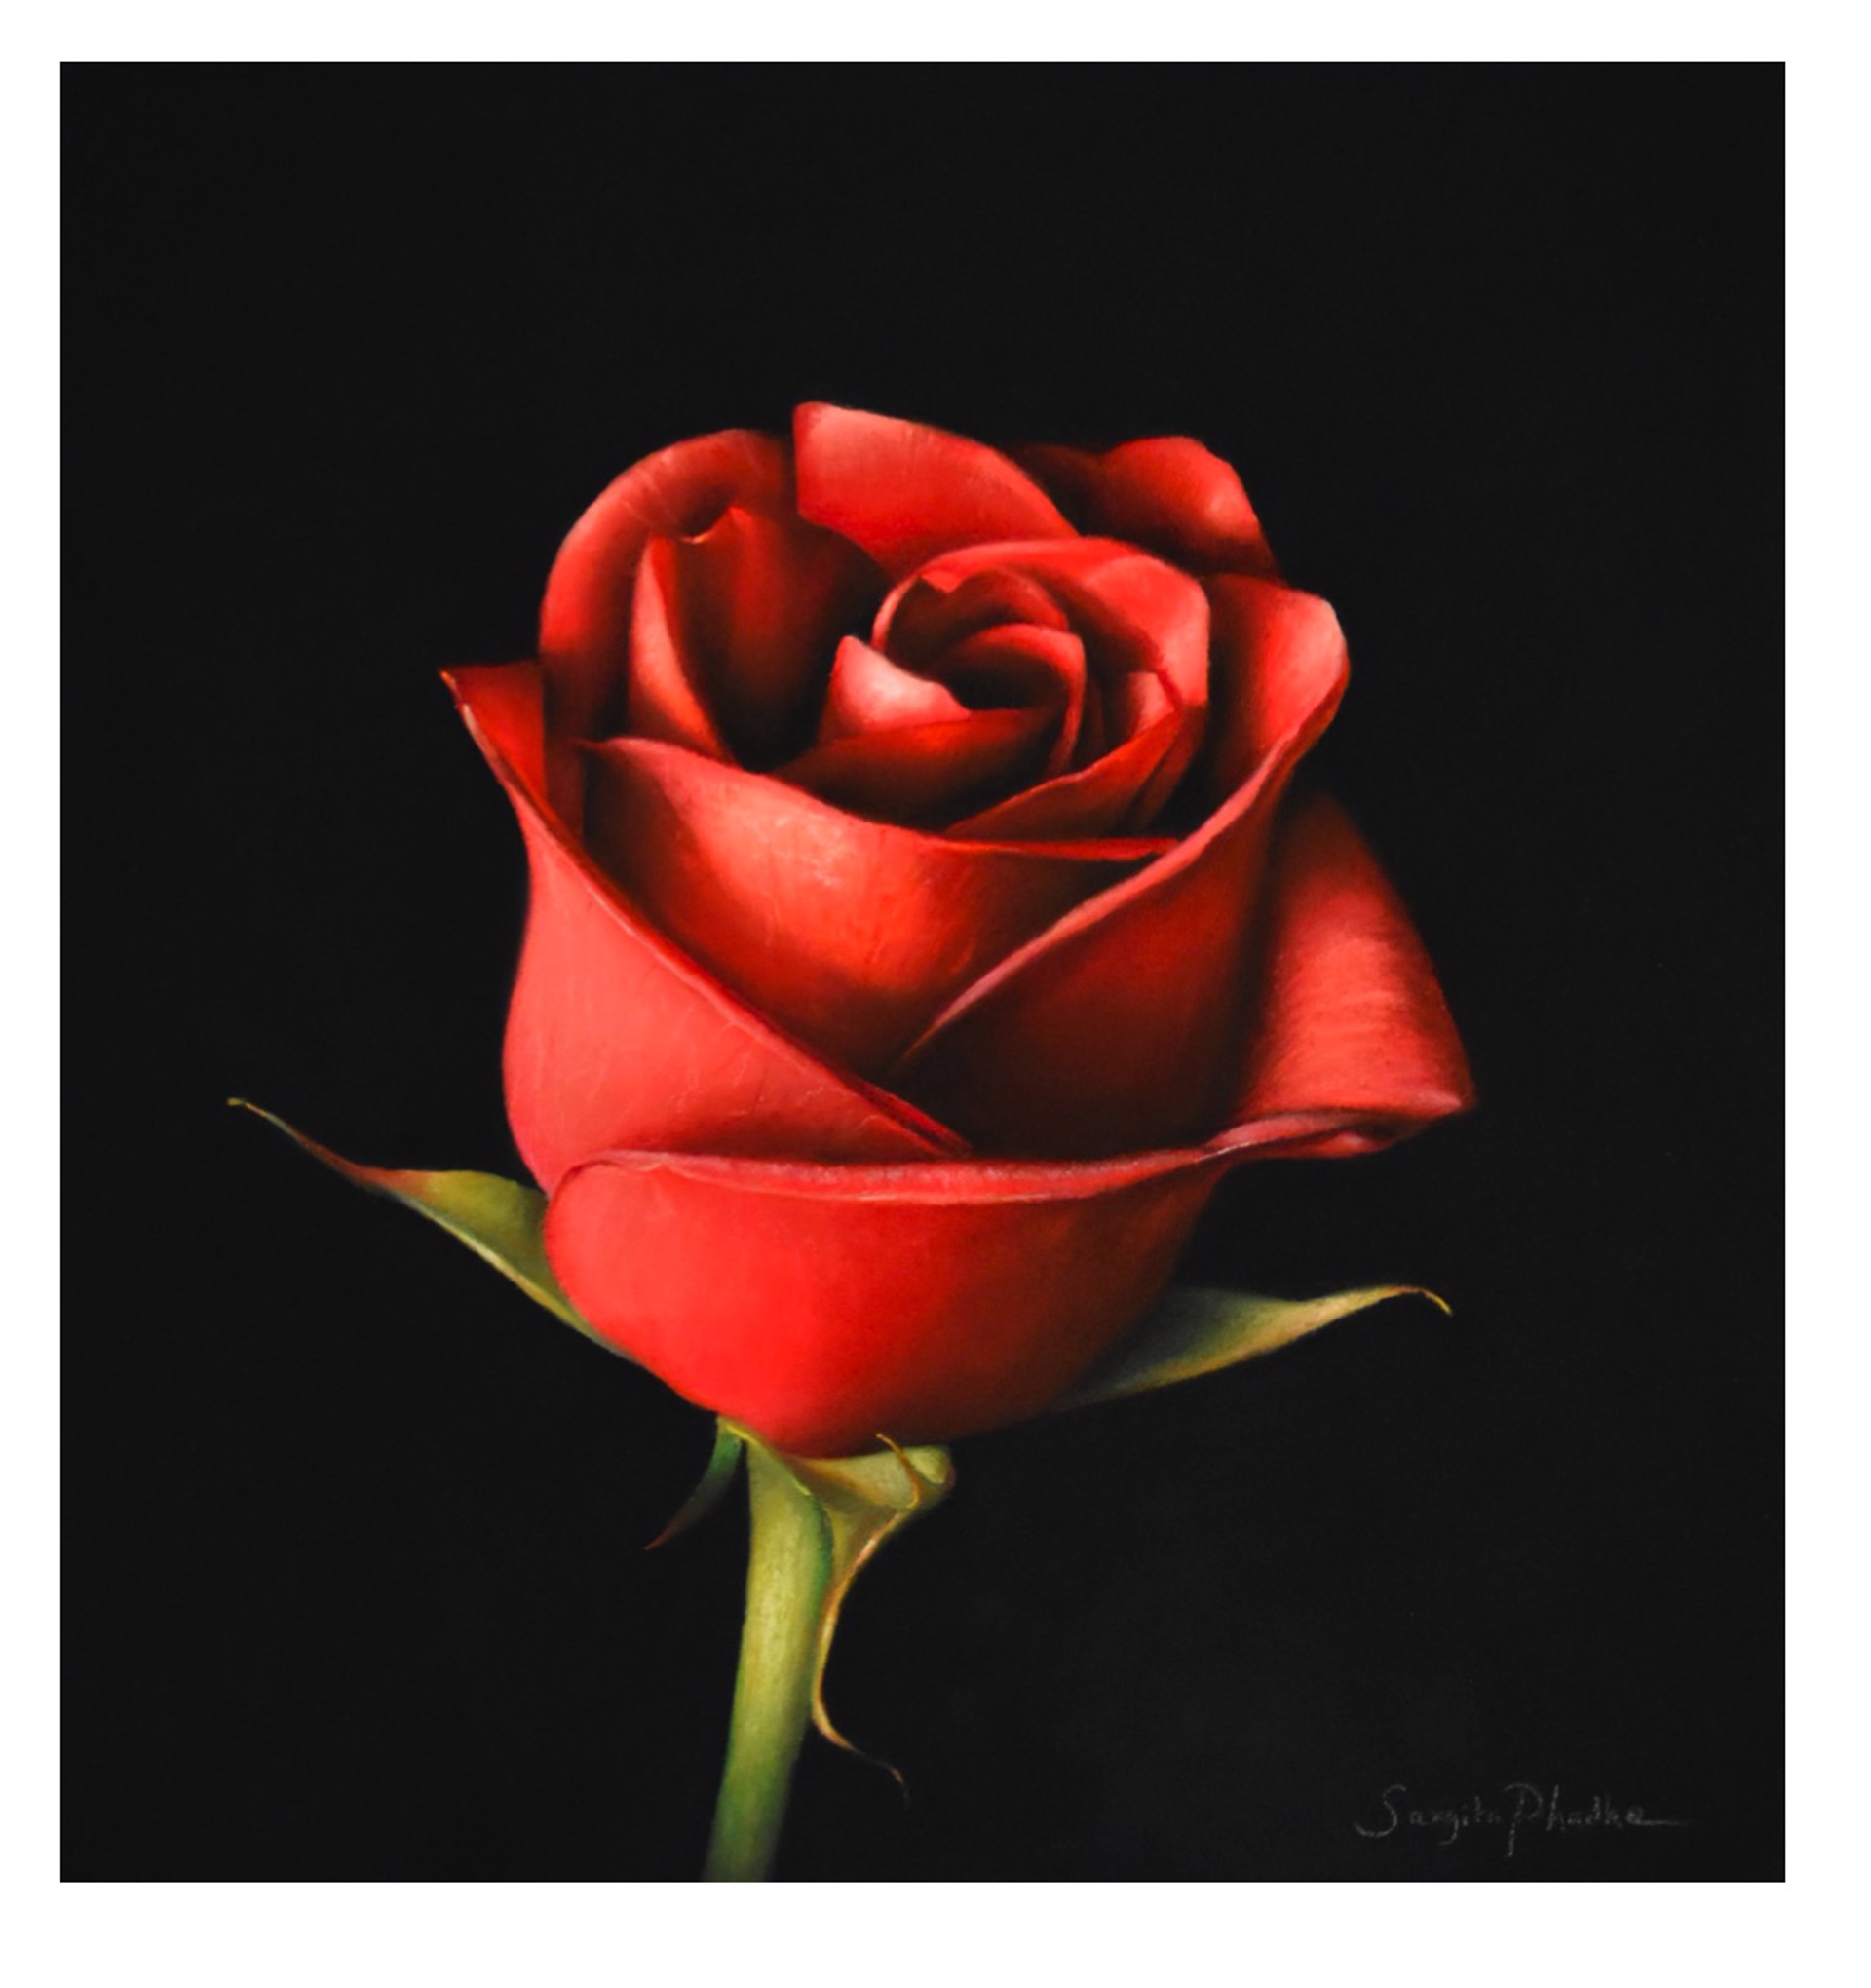 Red Rose by Sangita Phadke